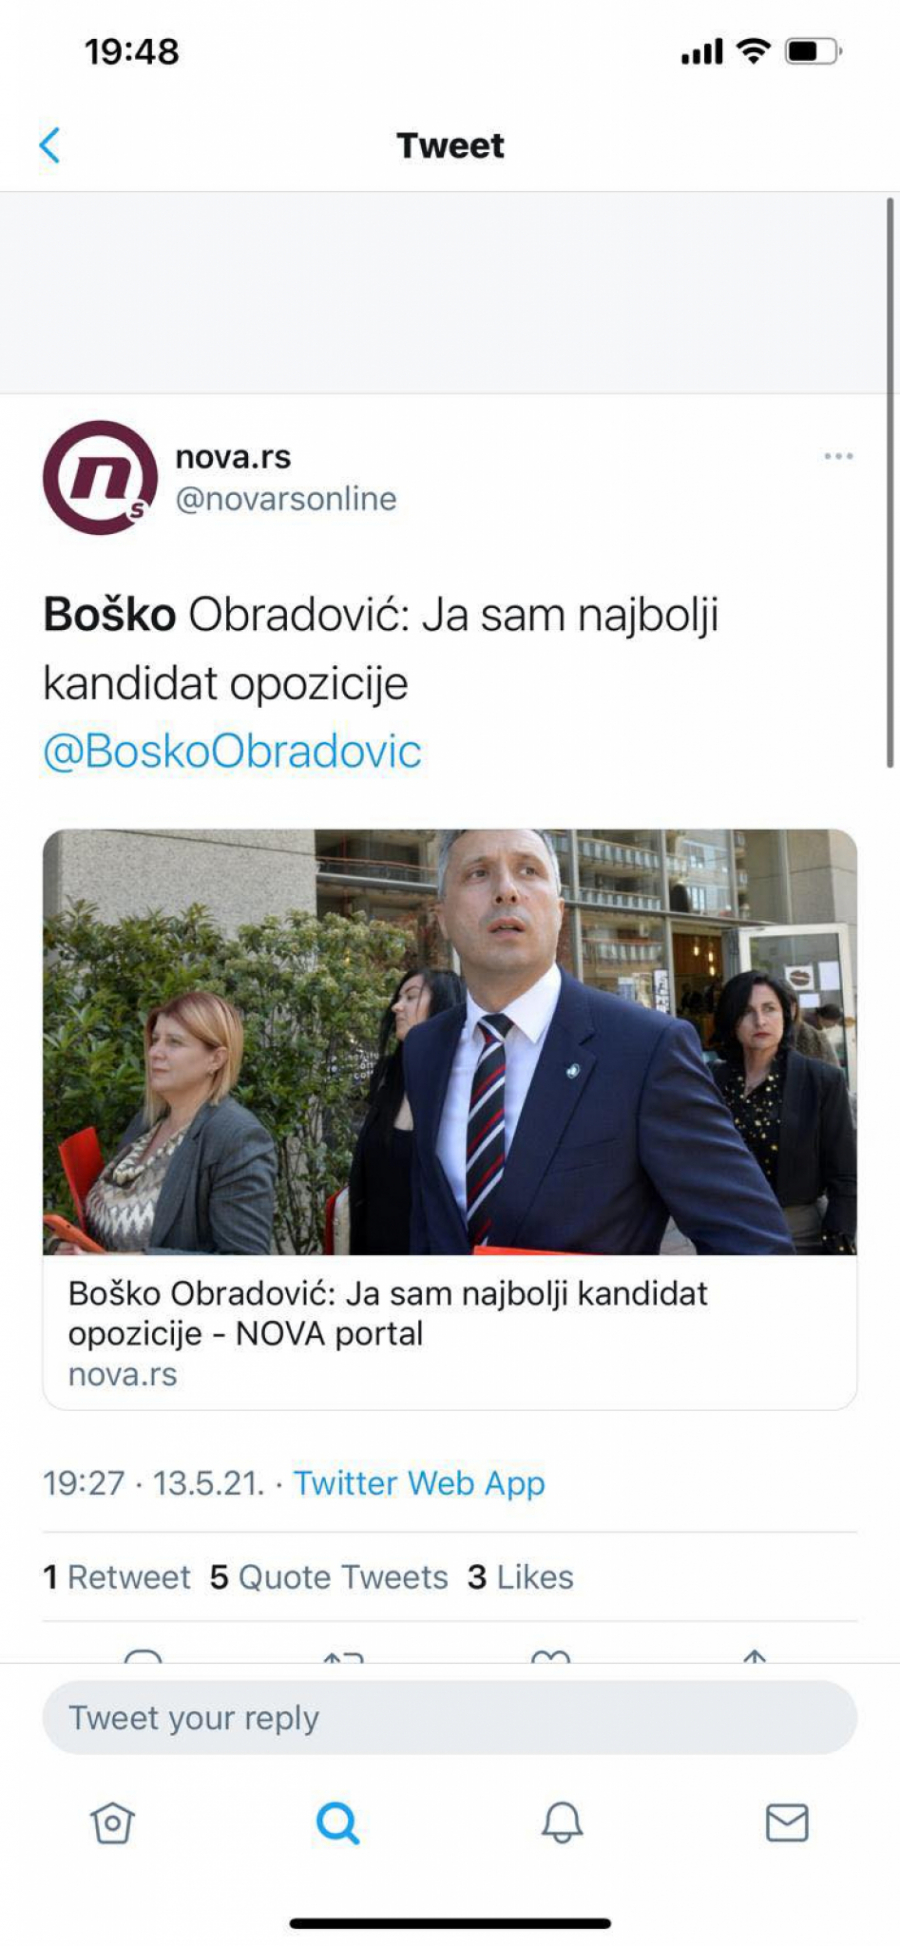 Boško Obradović:  Ja sam najbolji kandidat opozicije